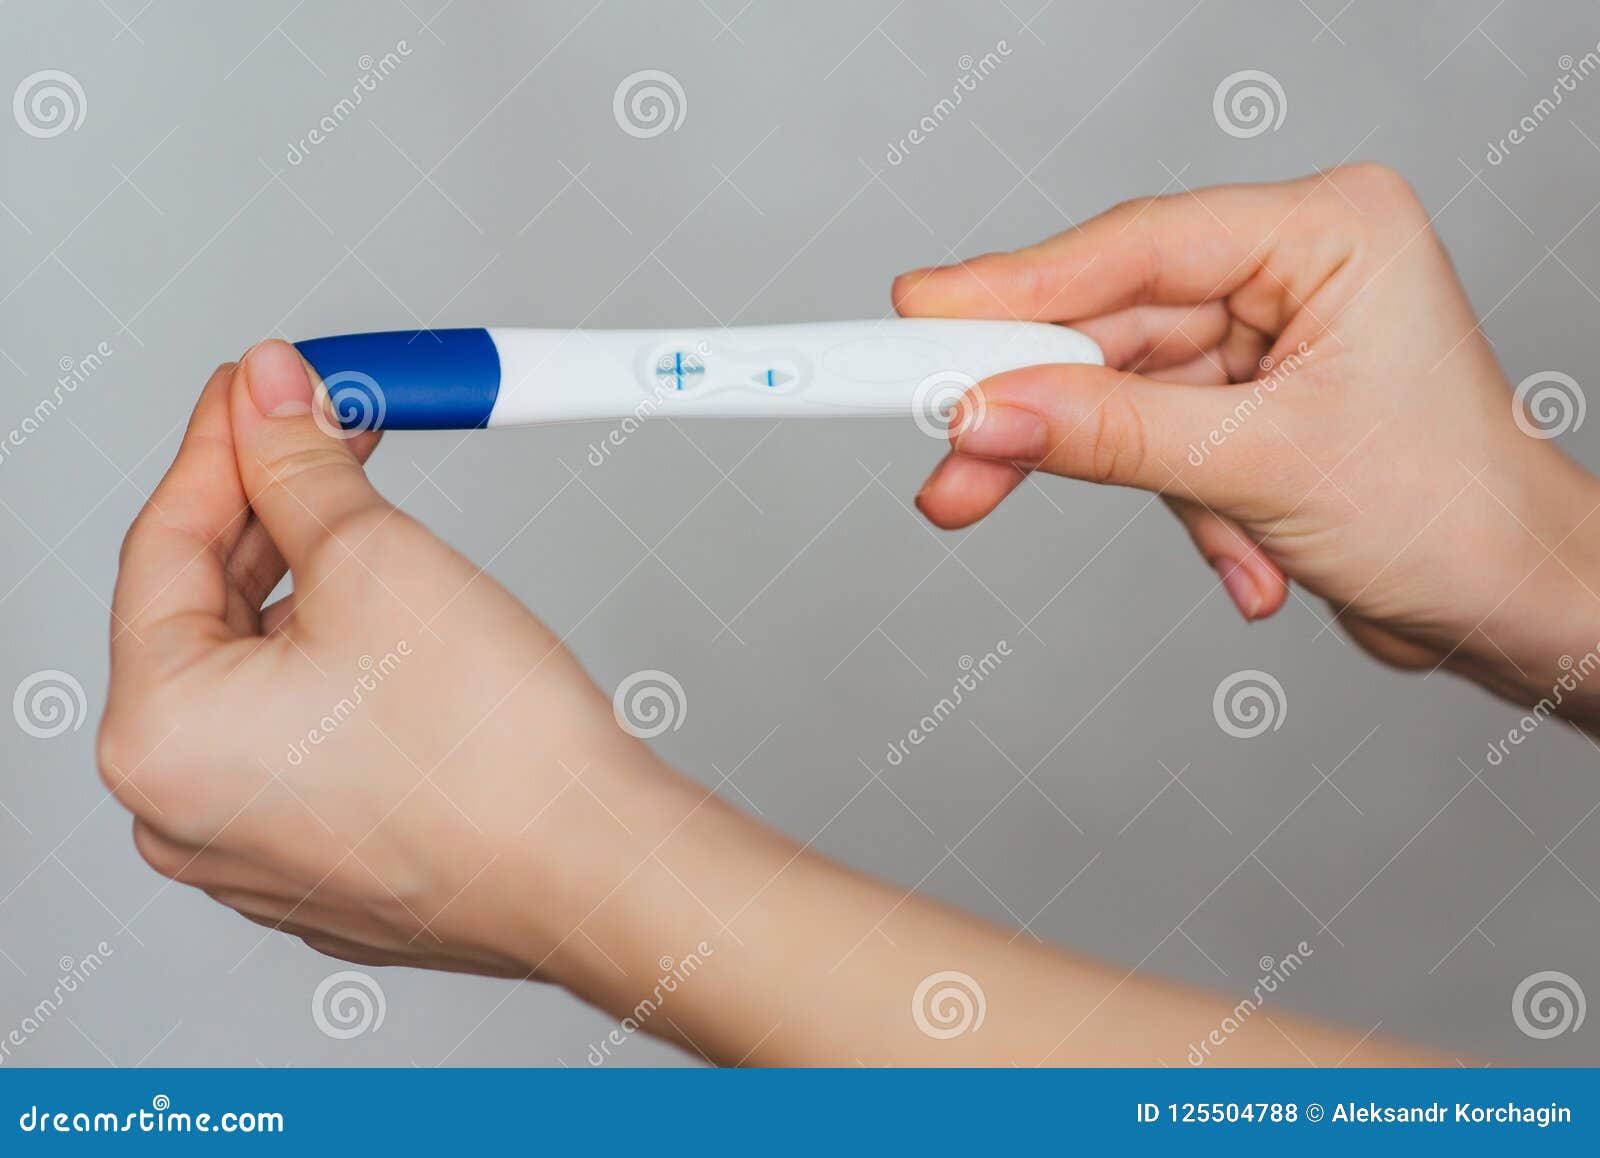 Тест на беременность в руке девушки. Положительный тест на беременность в руке. Я беременна тест в руке. Тест на беременность подарок.